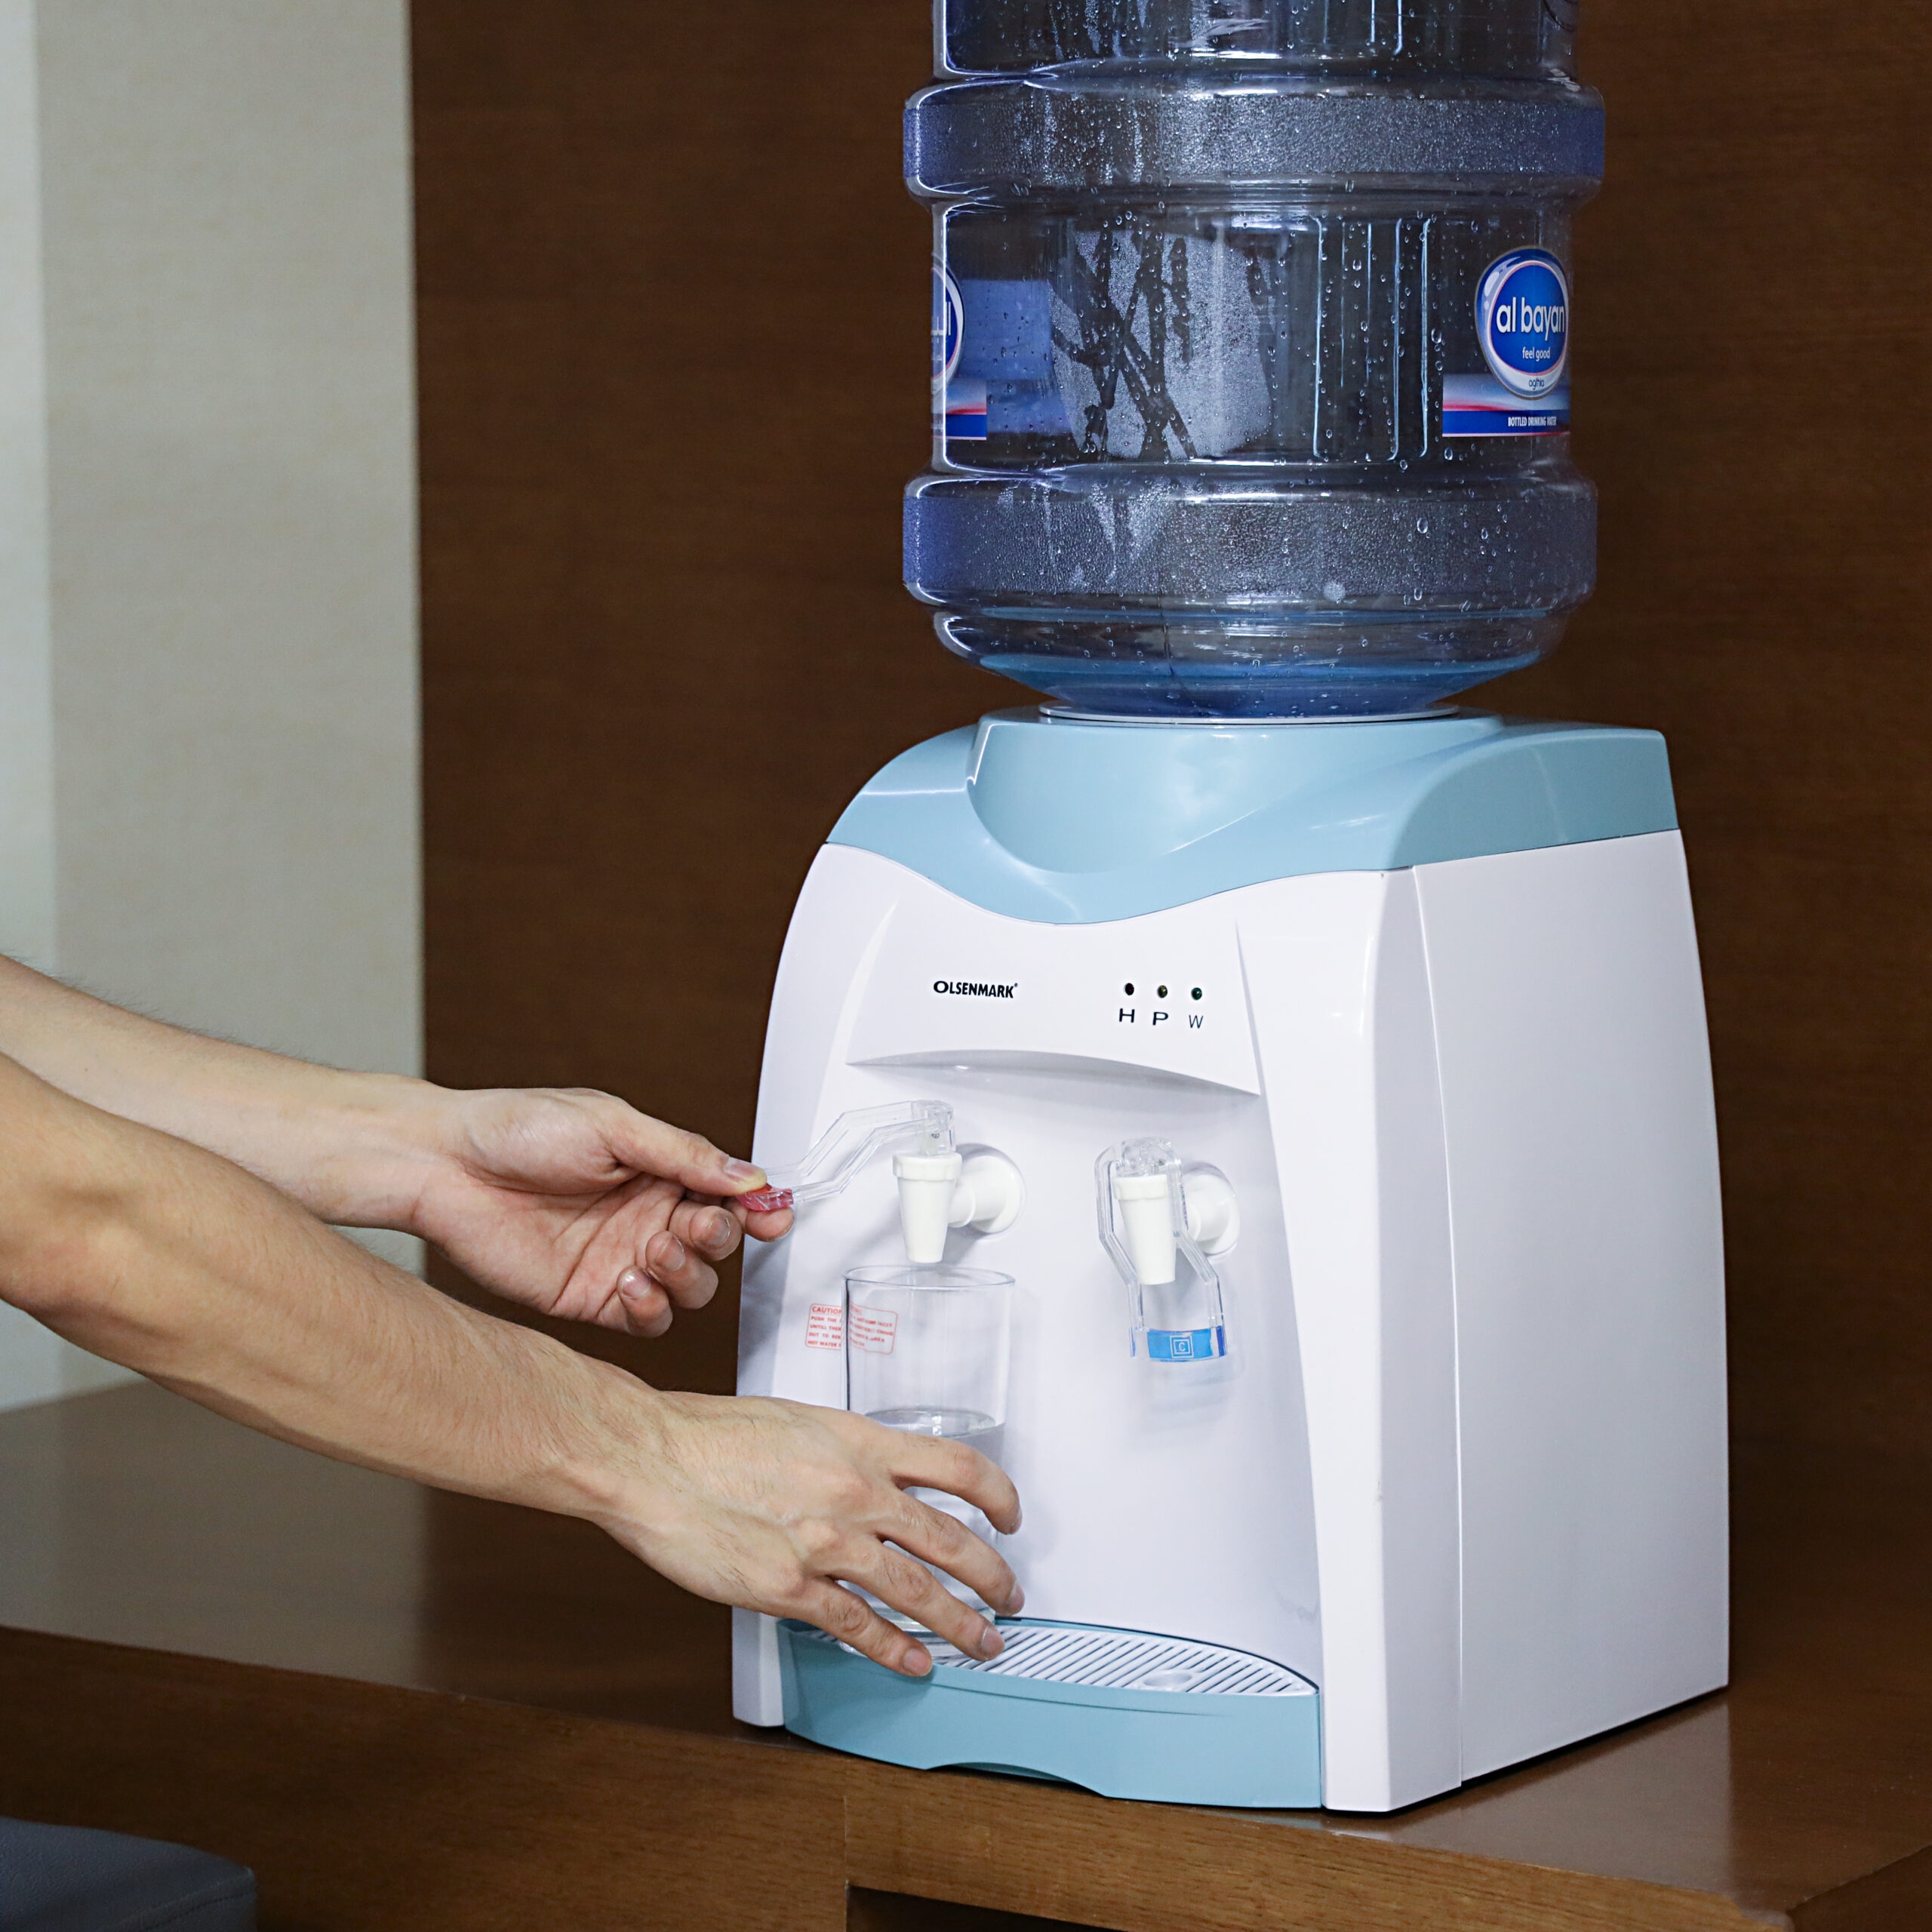 برادة ماء (كولر) Olsenmark Hot & Normal Water Dispenser - 4}